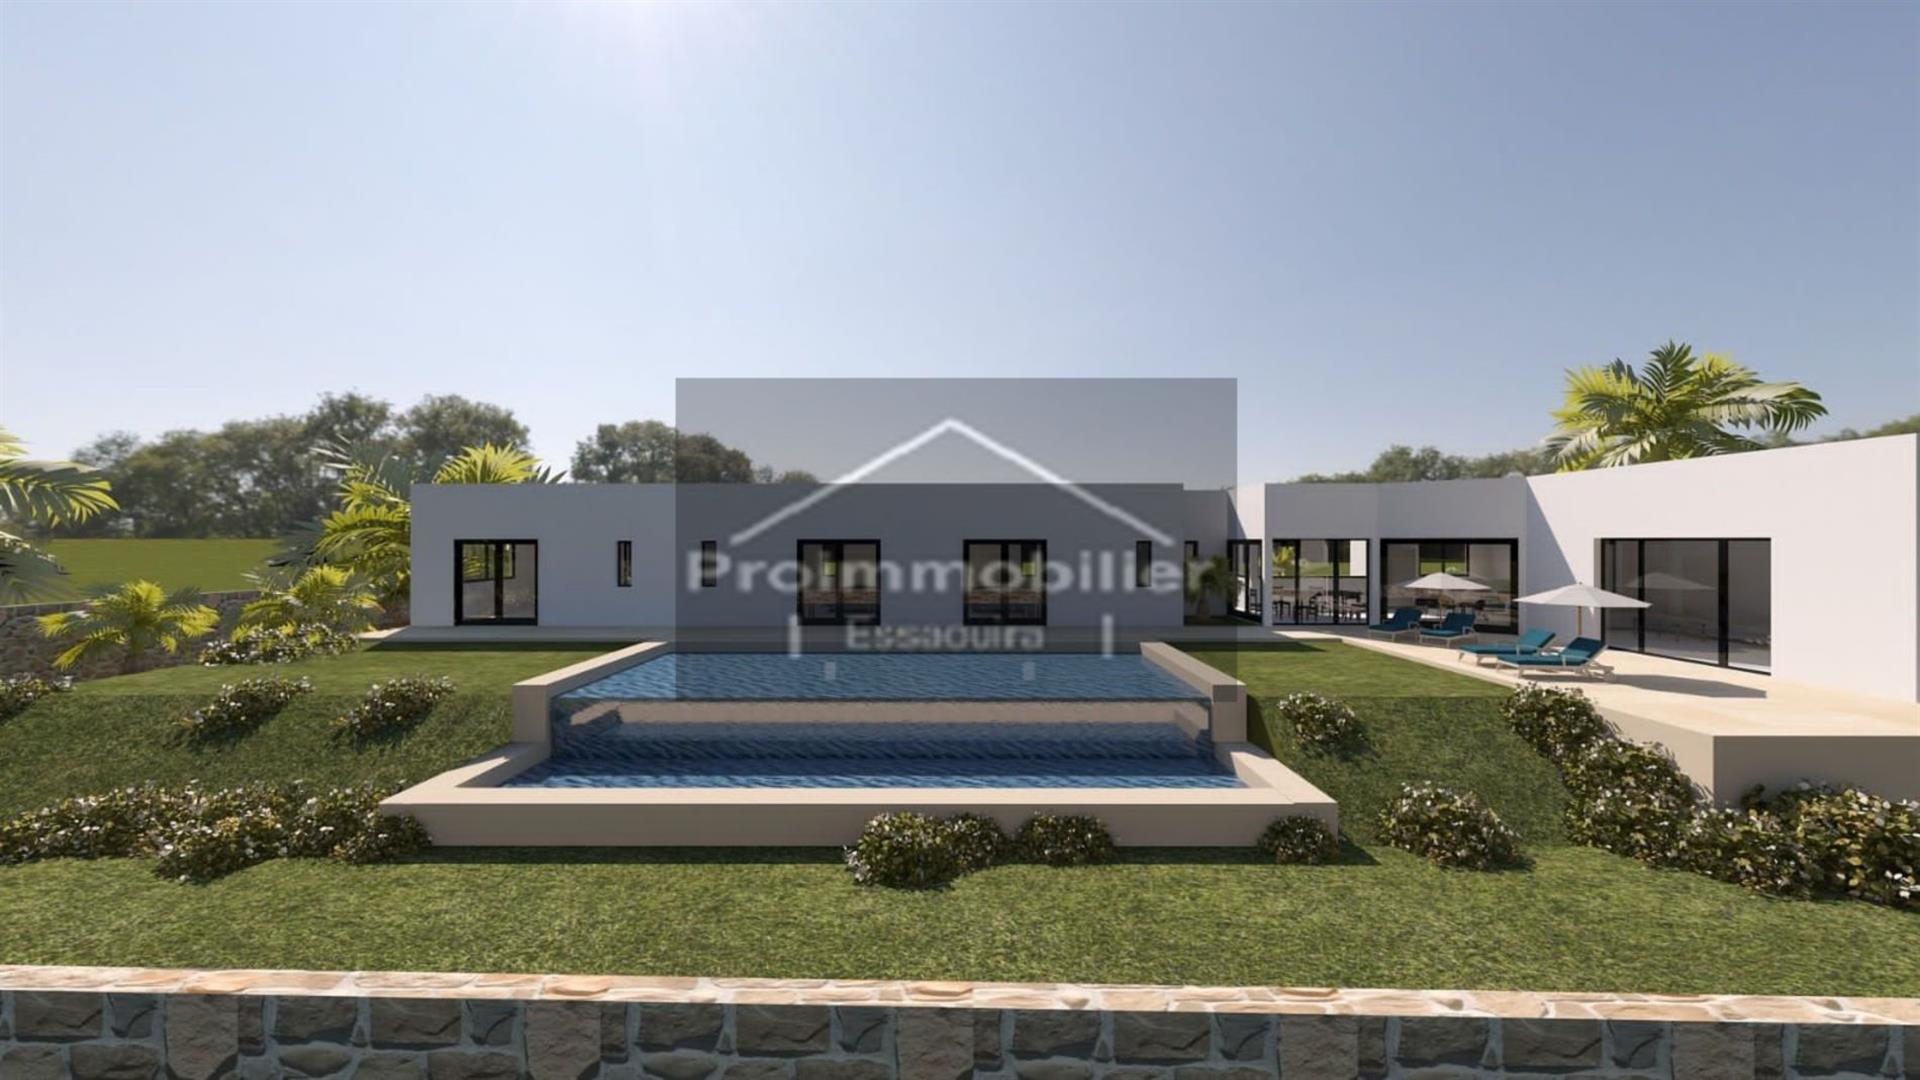 24-01-04-Vv Krásna moderná vila na predaj v Essaouire o rozlohe 200 m² pozemku 1200 m² vo výstavbe